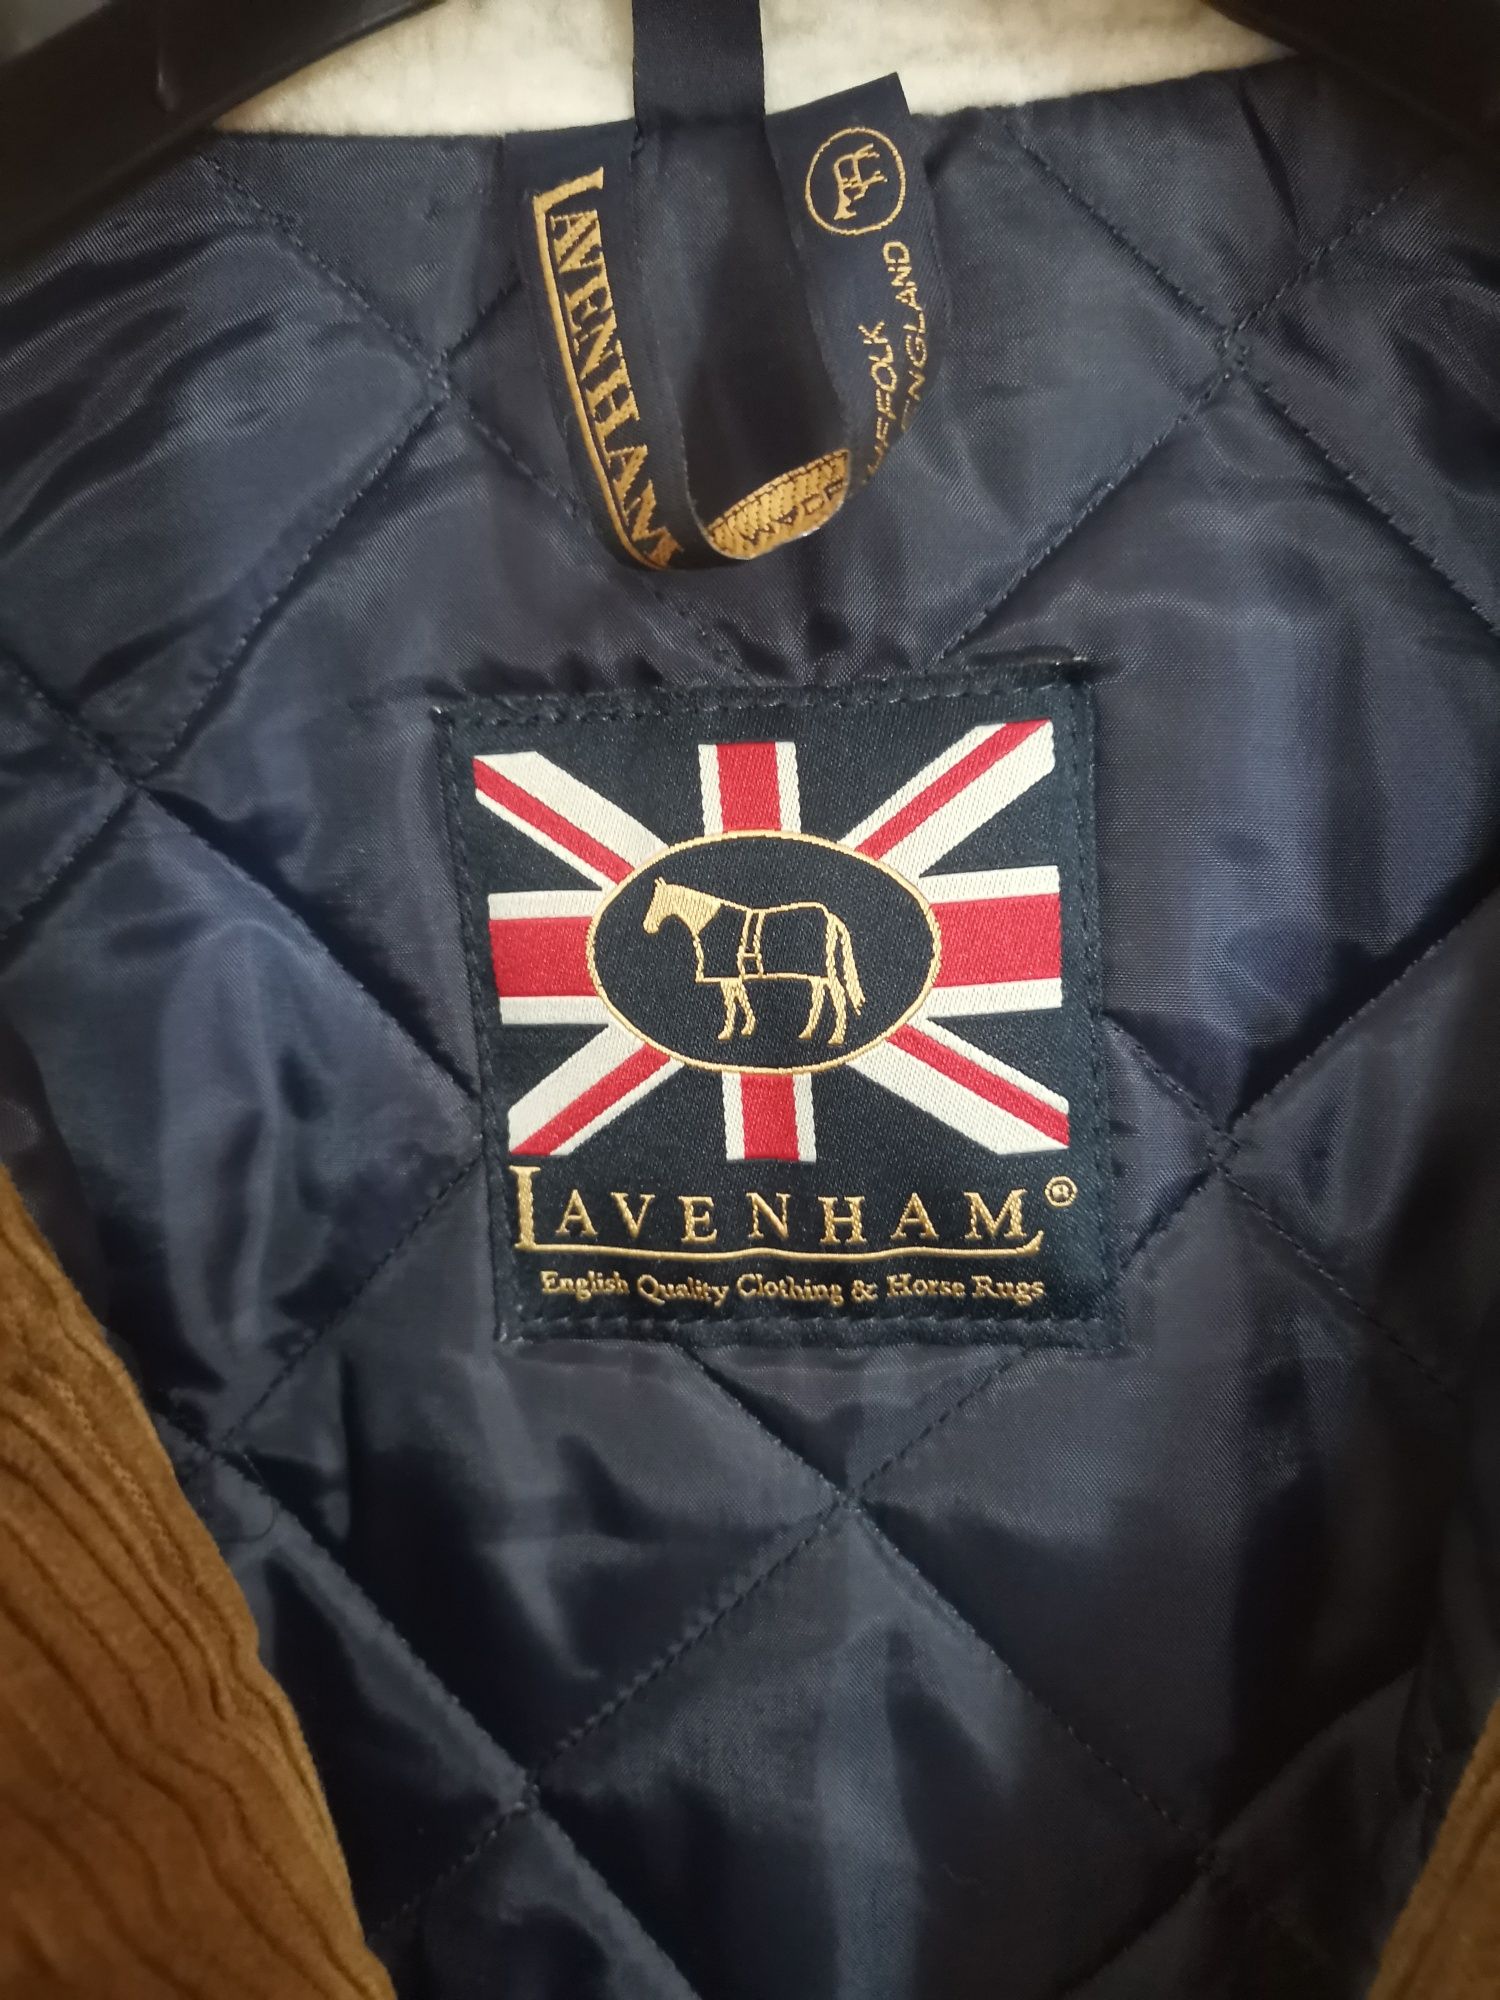 Ekskluzywna angielska kurtka Lavenham. Okazja 10% ceny.